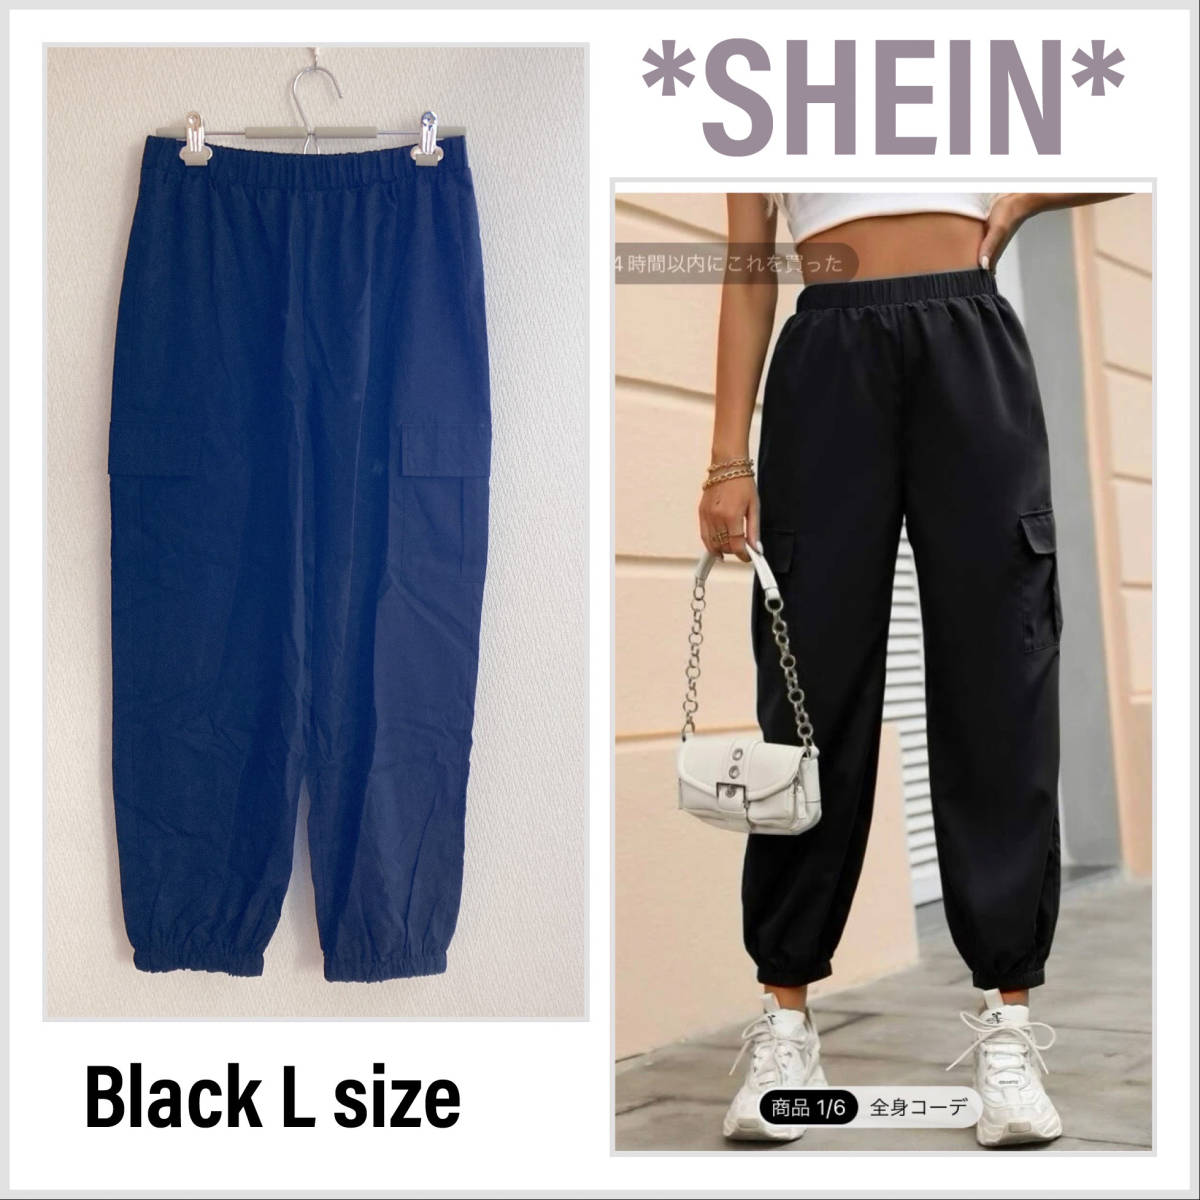  надеты . есть 2023 год 11 месяц покупка новый товар SHEINsi- in брюки-карго черный чёрный L Dance брюки свободно спорт тренировка 